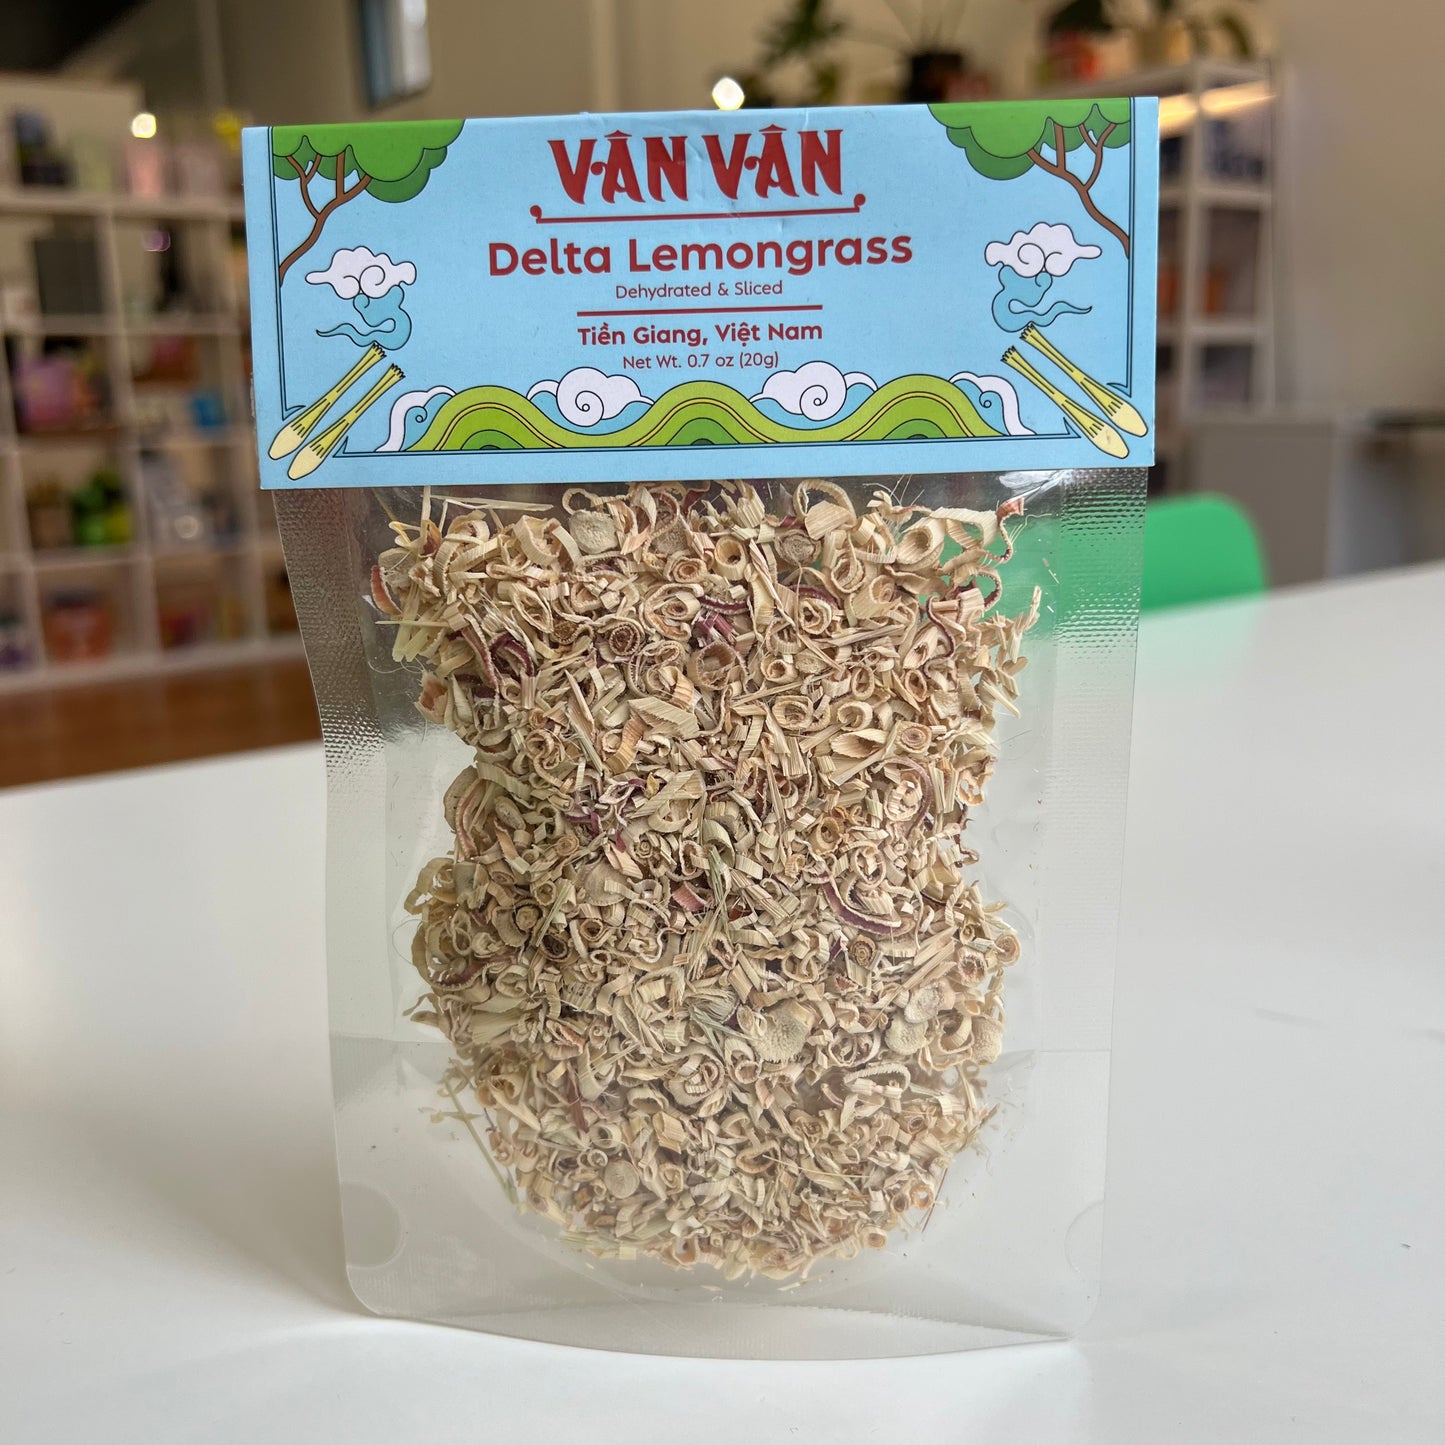 Van Van - Delta Lemongrass